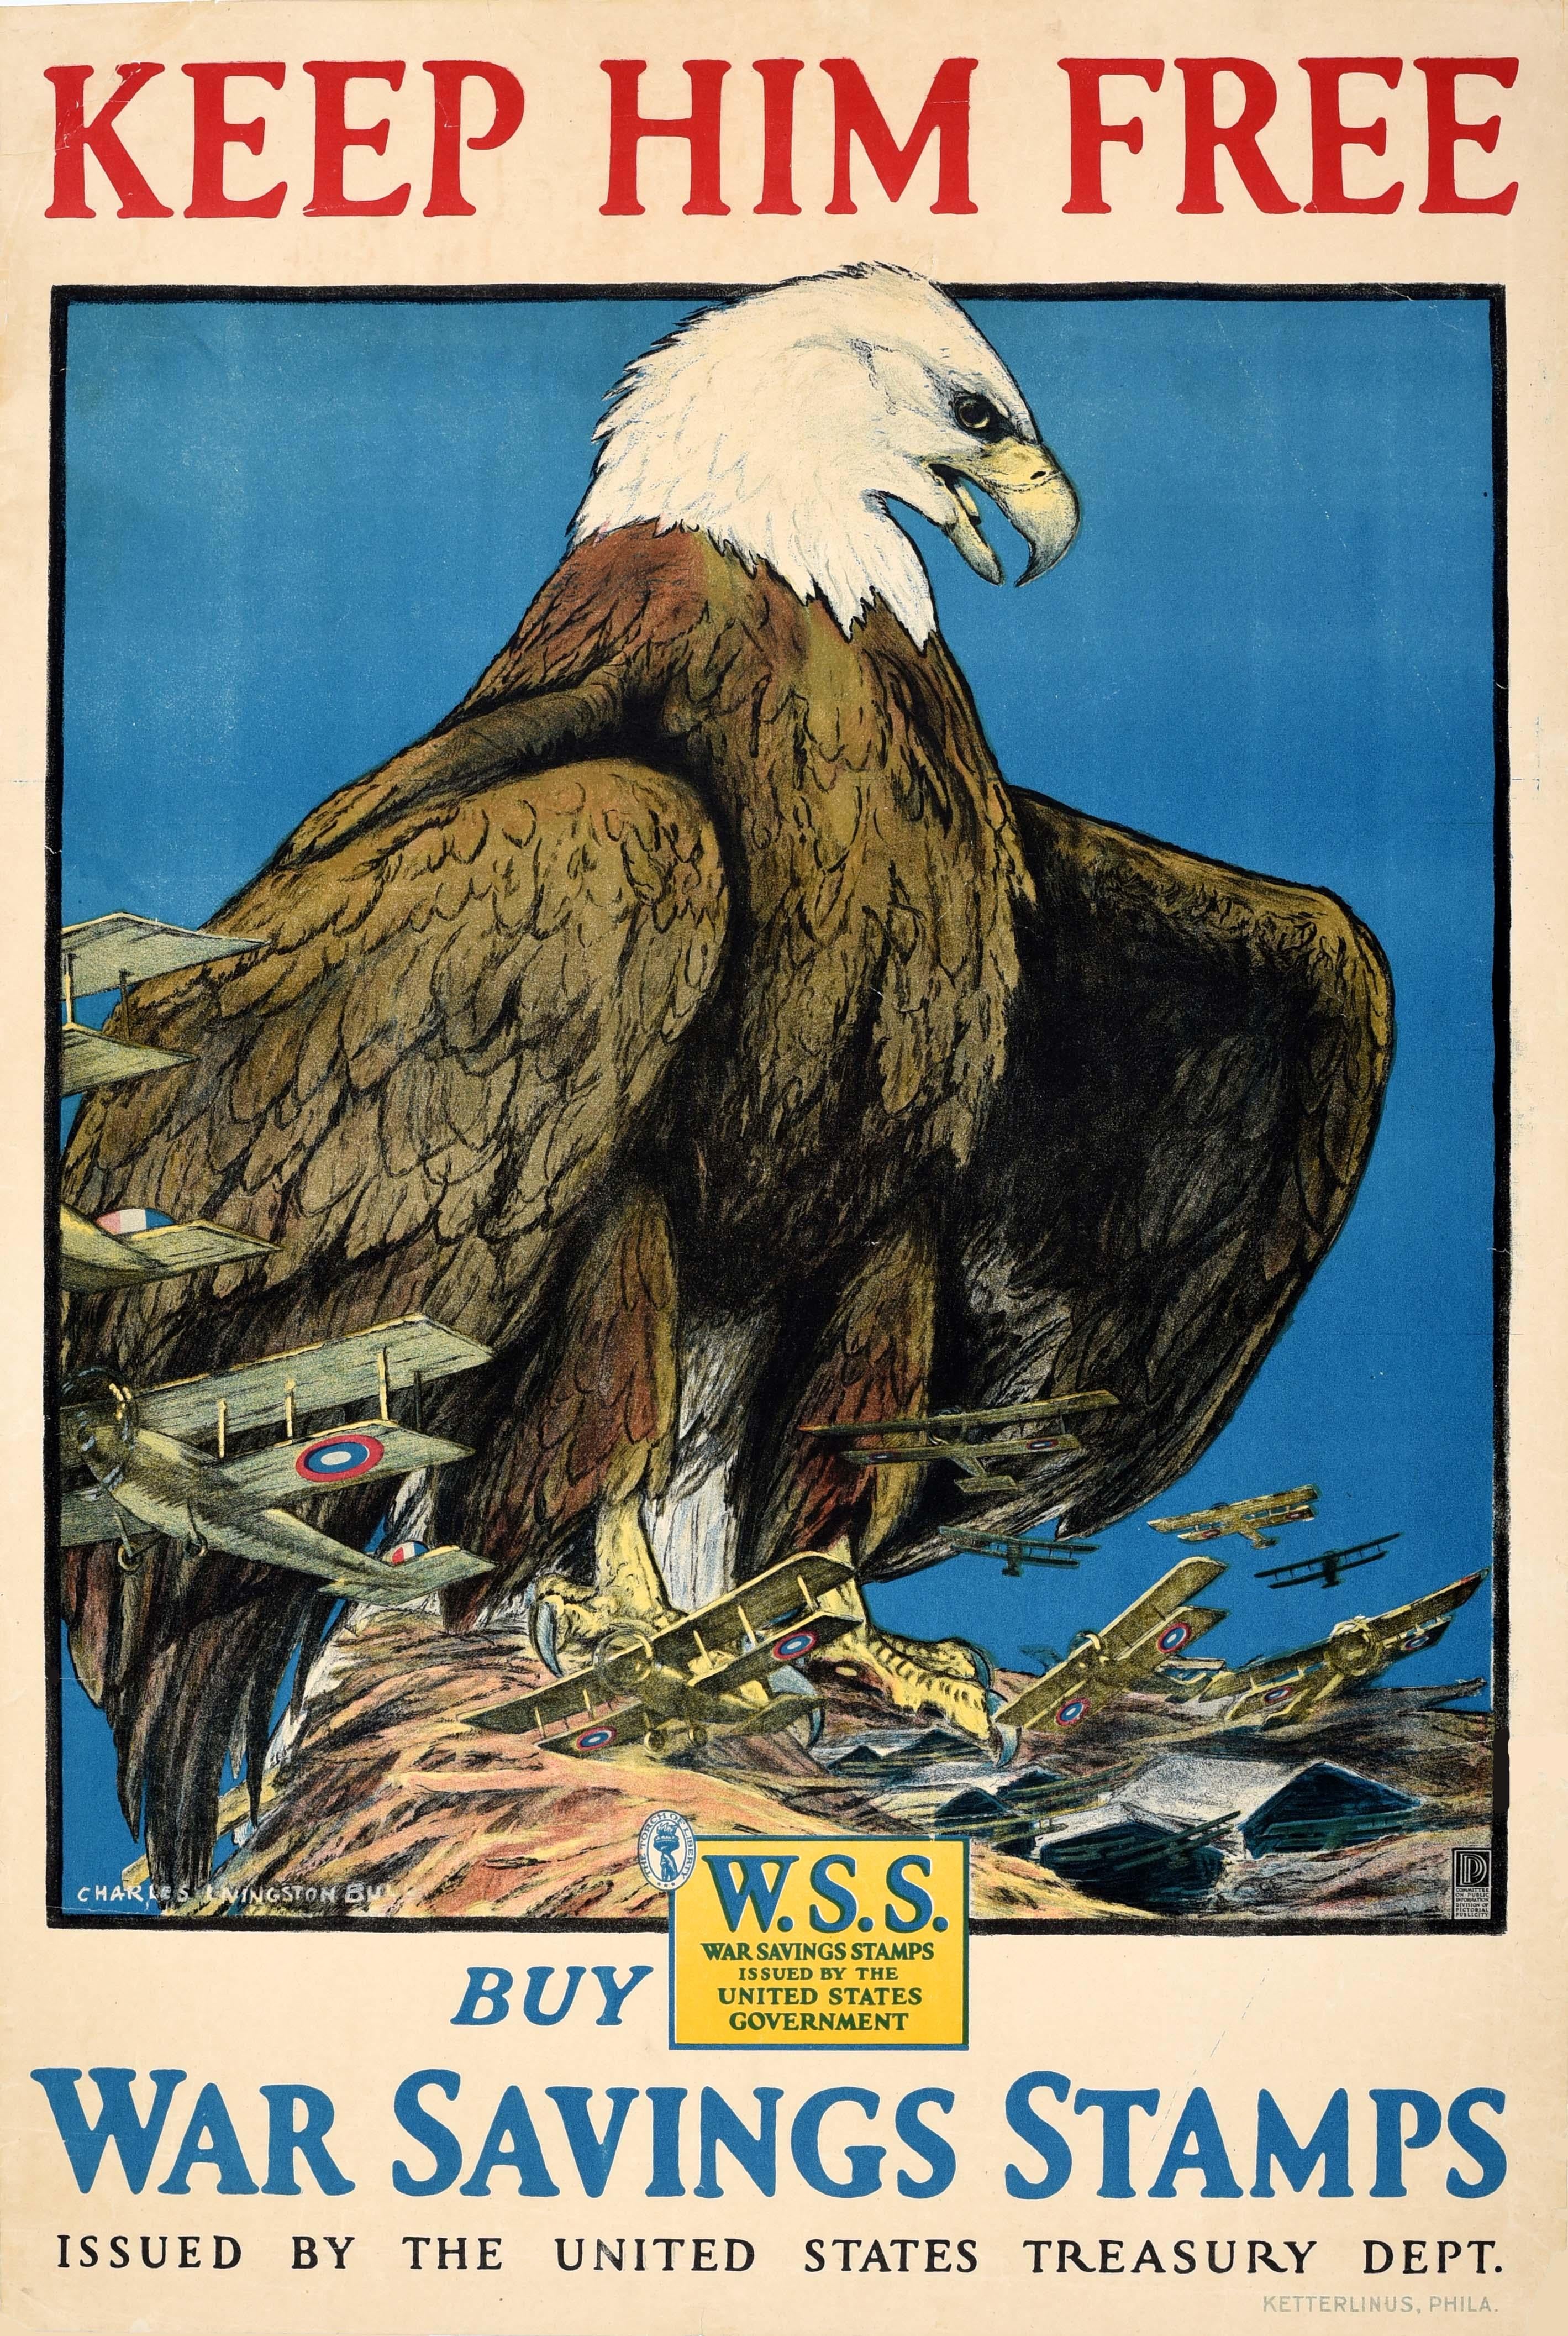 Unknown Print – Original Antikes Kriegsplakat „ Keep Him Free“, WWI, USA Air Force, Kriegssparschweine, Briefmarken, Original